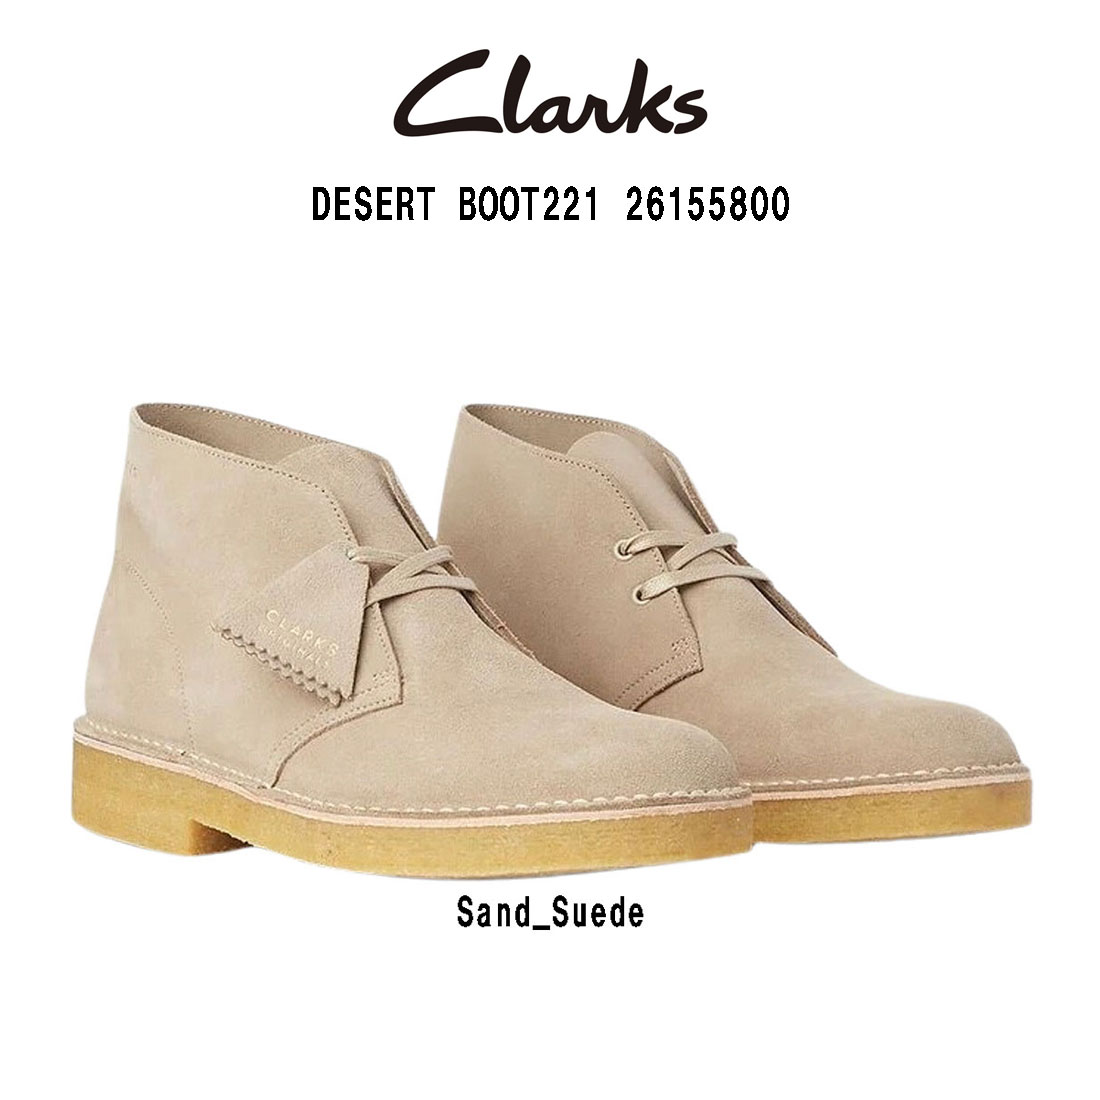 CLARKS(クラークス)チャッカブーツ デザートブーツ ハイカット スタンダード シューズ 革靴 スエード ベージュ メンズ DESERT BOOT221 26155800